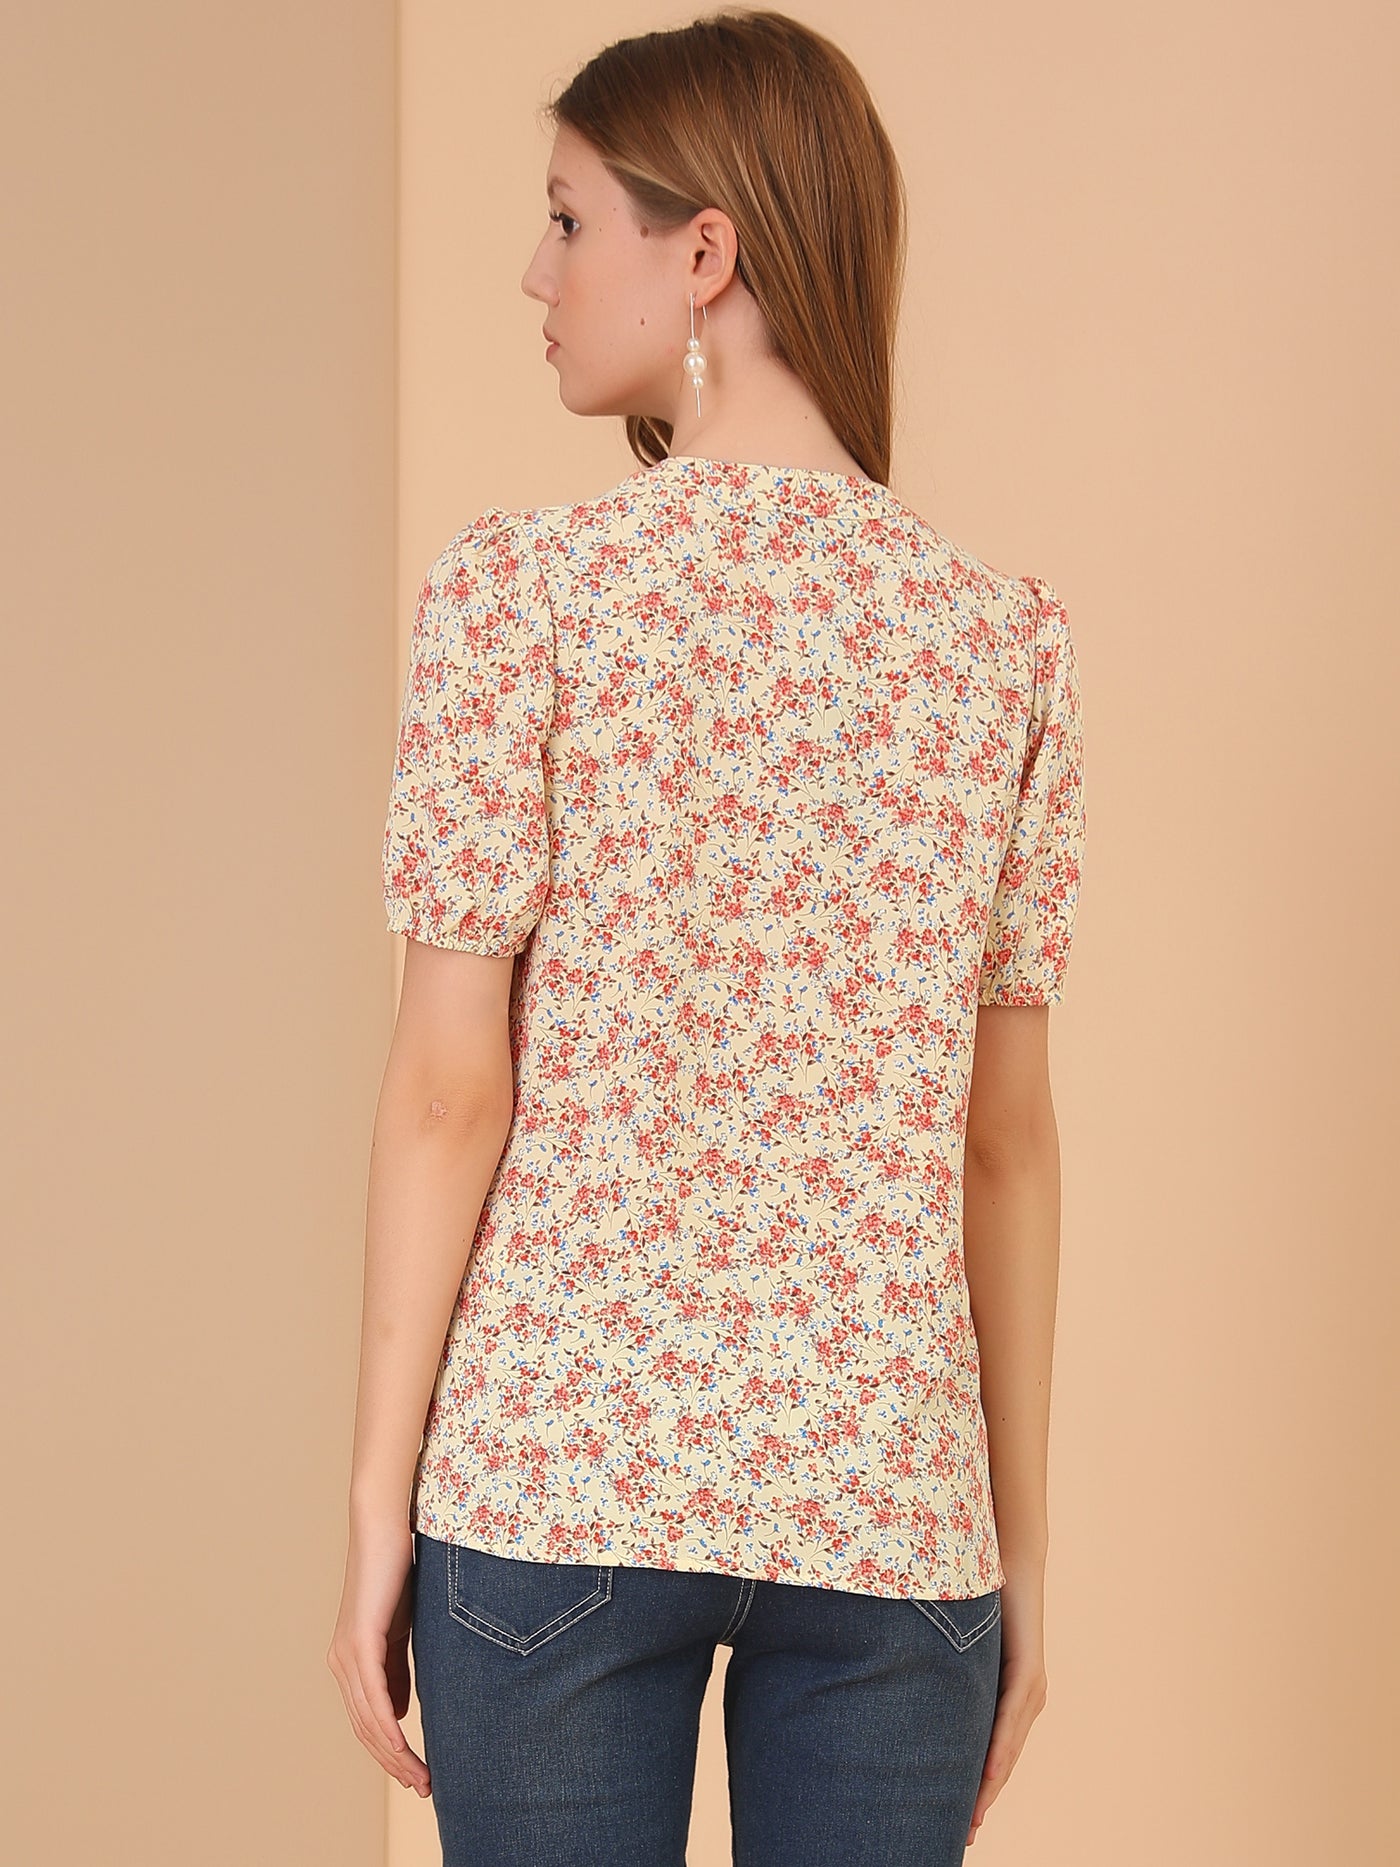 Allegra K Summer Short Sleeve V Neck Ruffle Floral Button Down Shirt Top